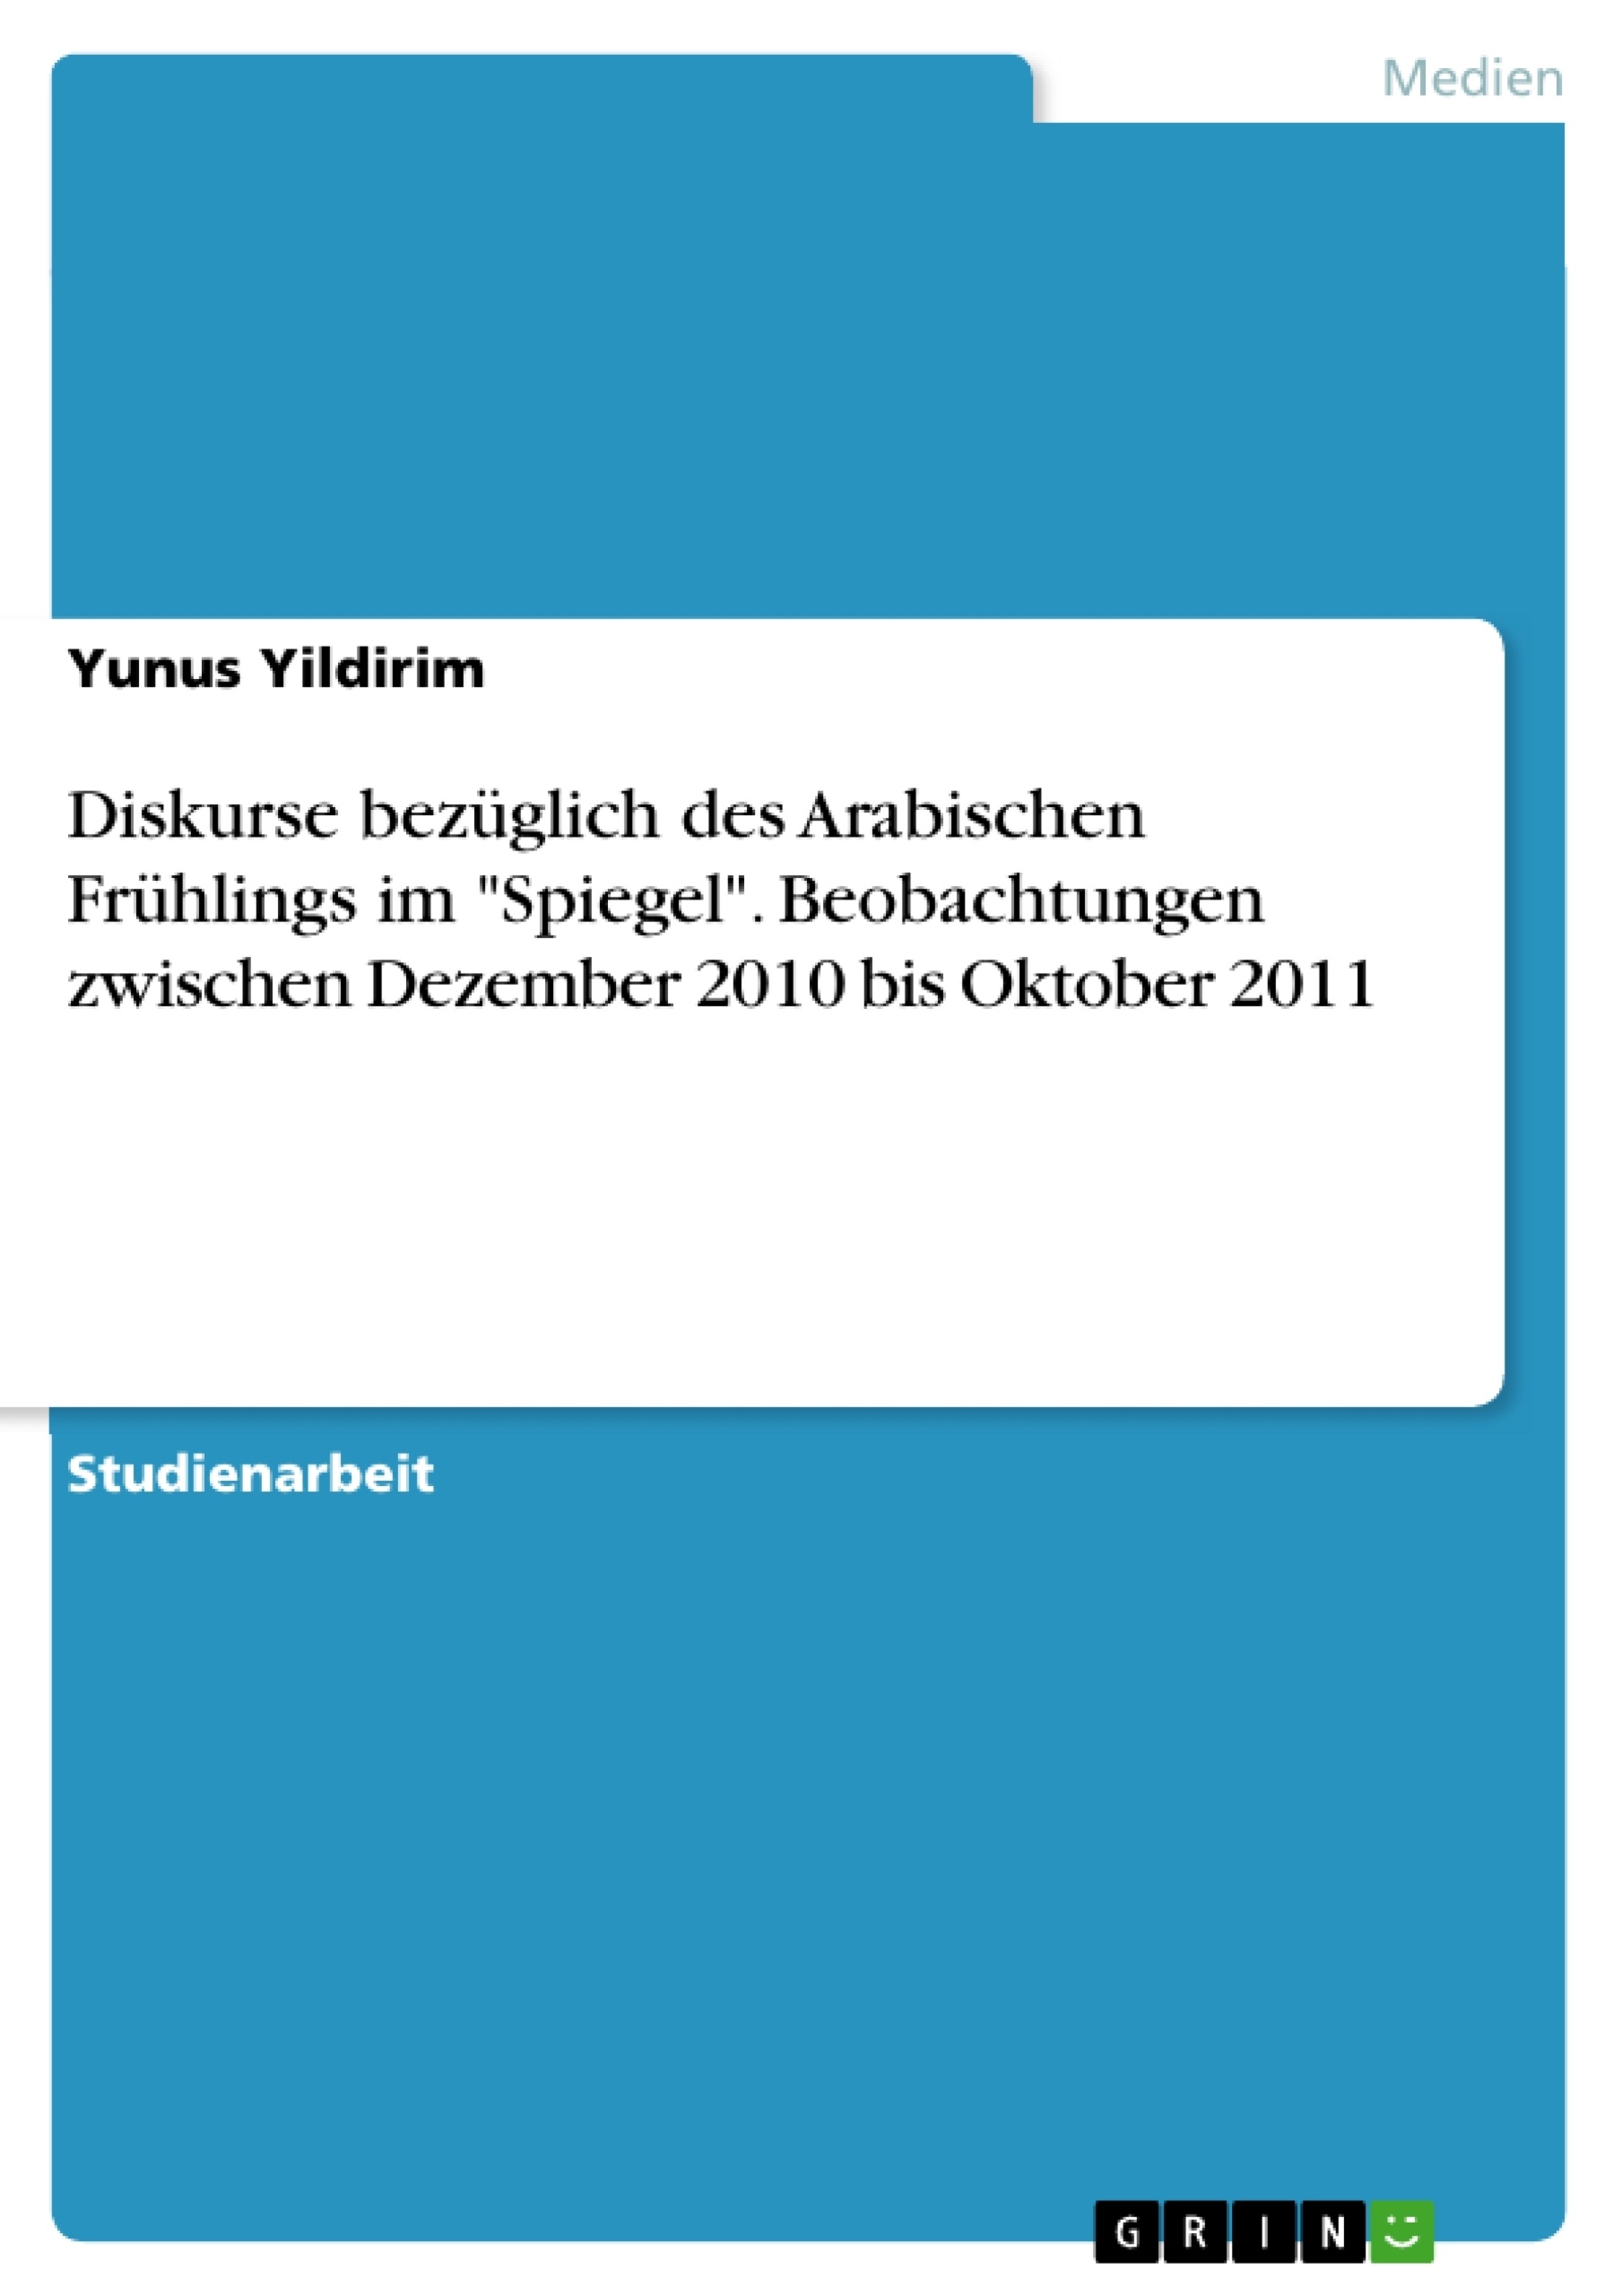 Title: Diskurse bezüglich des Arabischen Frühlings im "Spiegel". Beobachtungen zwischen Dezember 2010 bis Oktober 2011